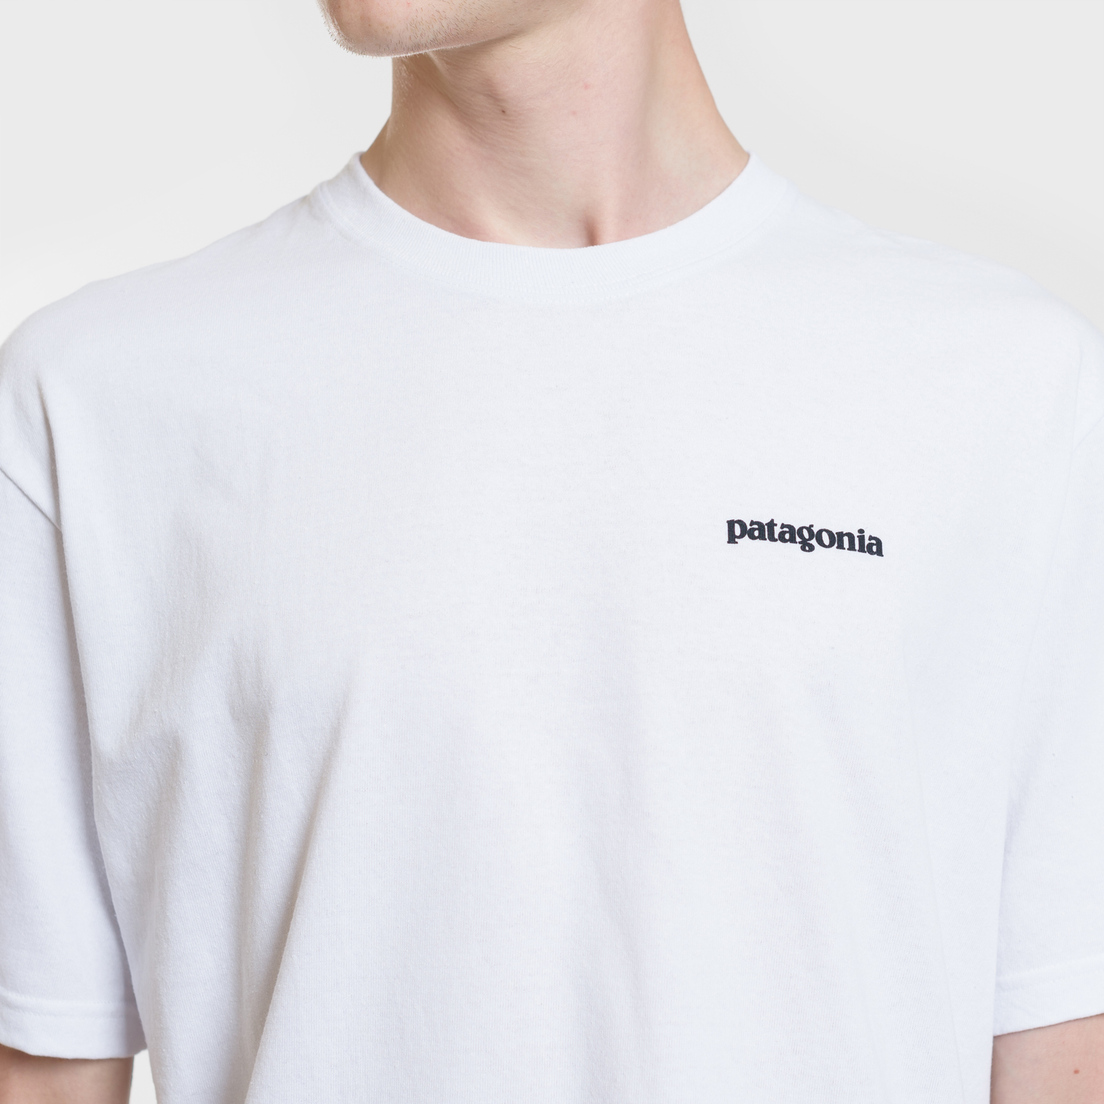 Patagonia Мужская футболка P-6 Logo